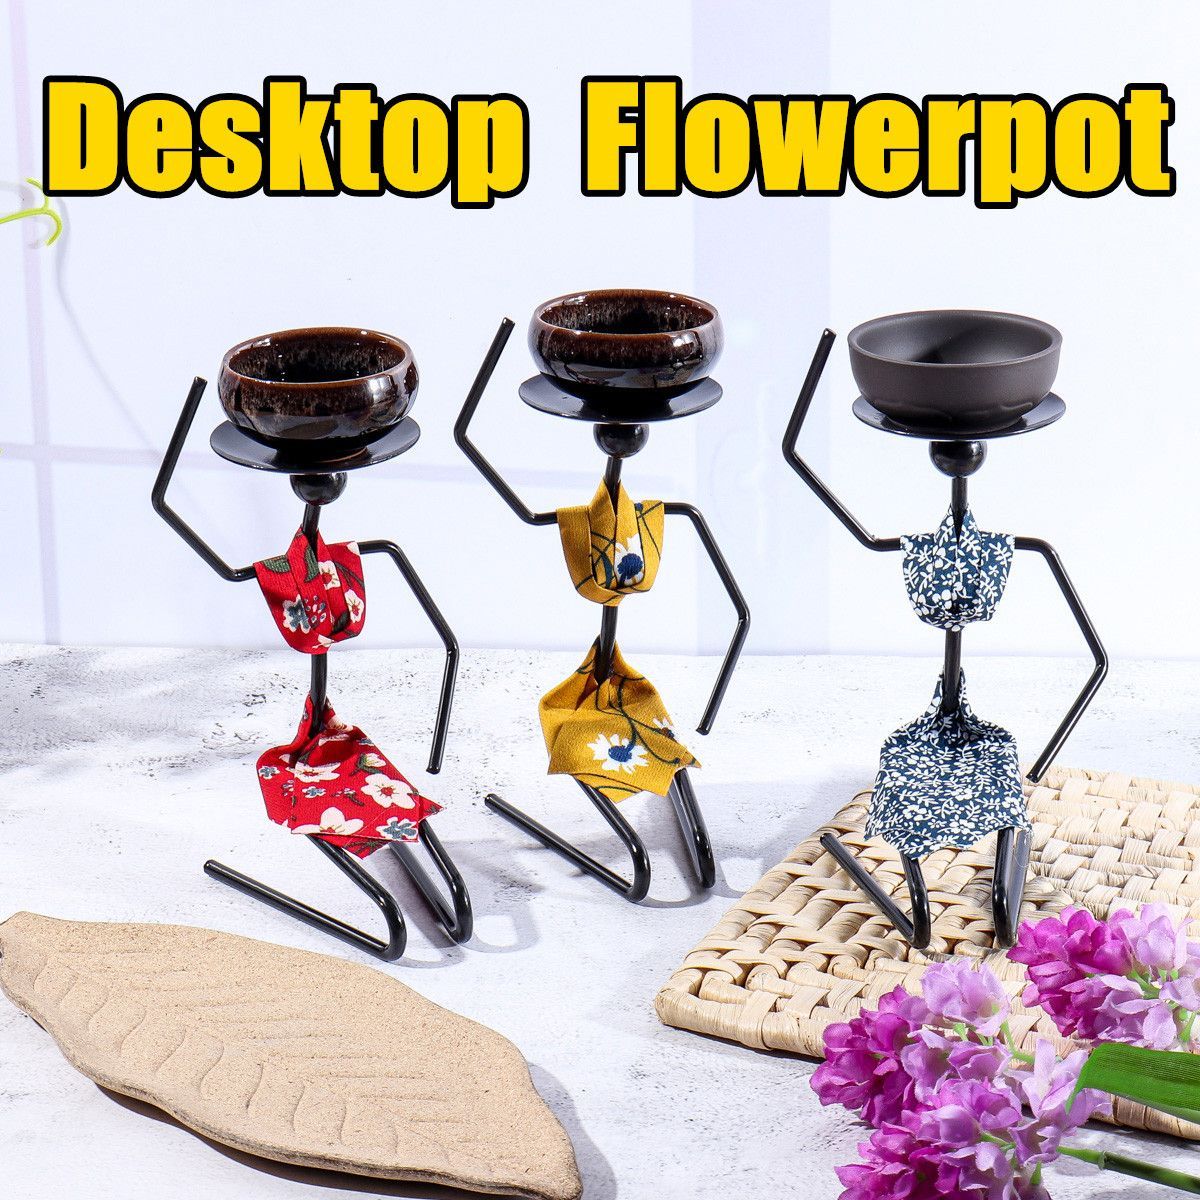 Desktop-Flower-Pot-Succulent-Container-Fleshy-Small-Pots-Rack-Home-Office-Decoration-1728922